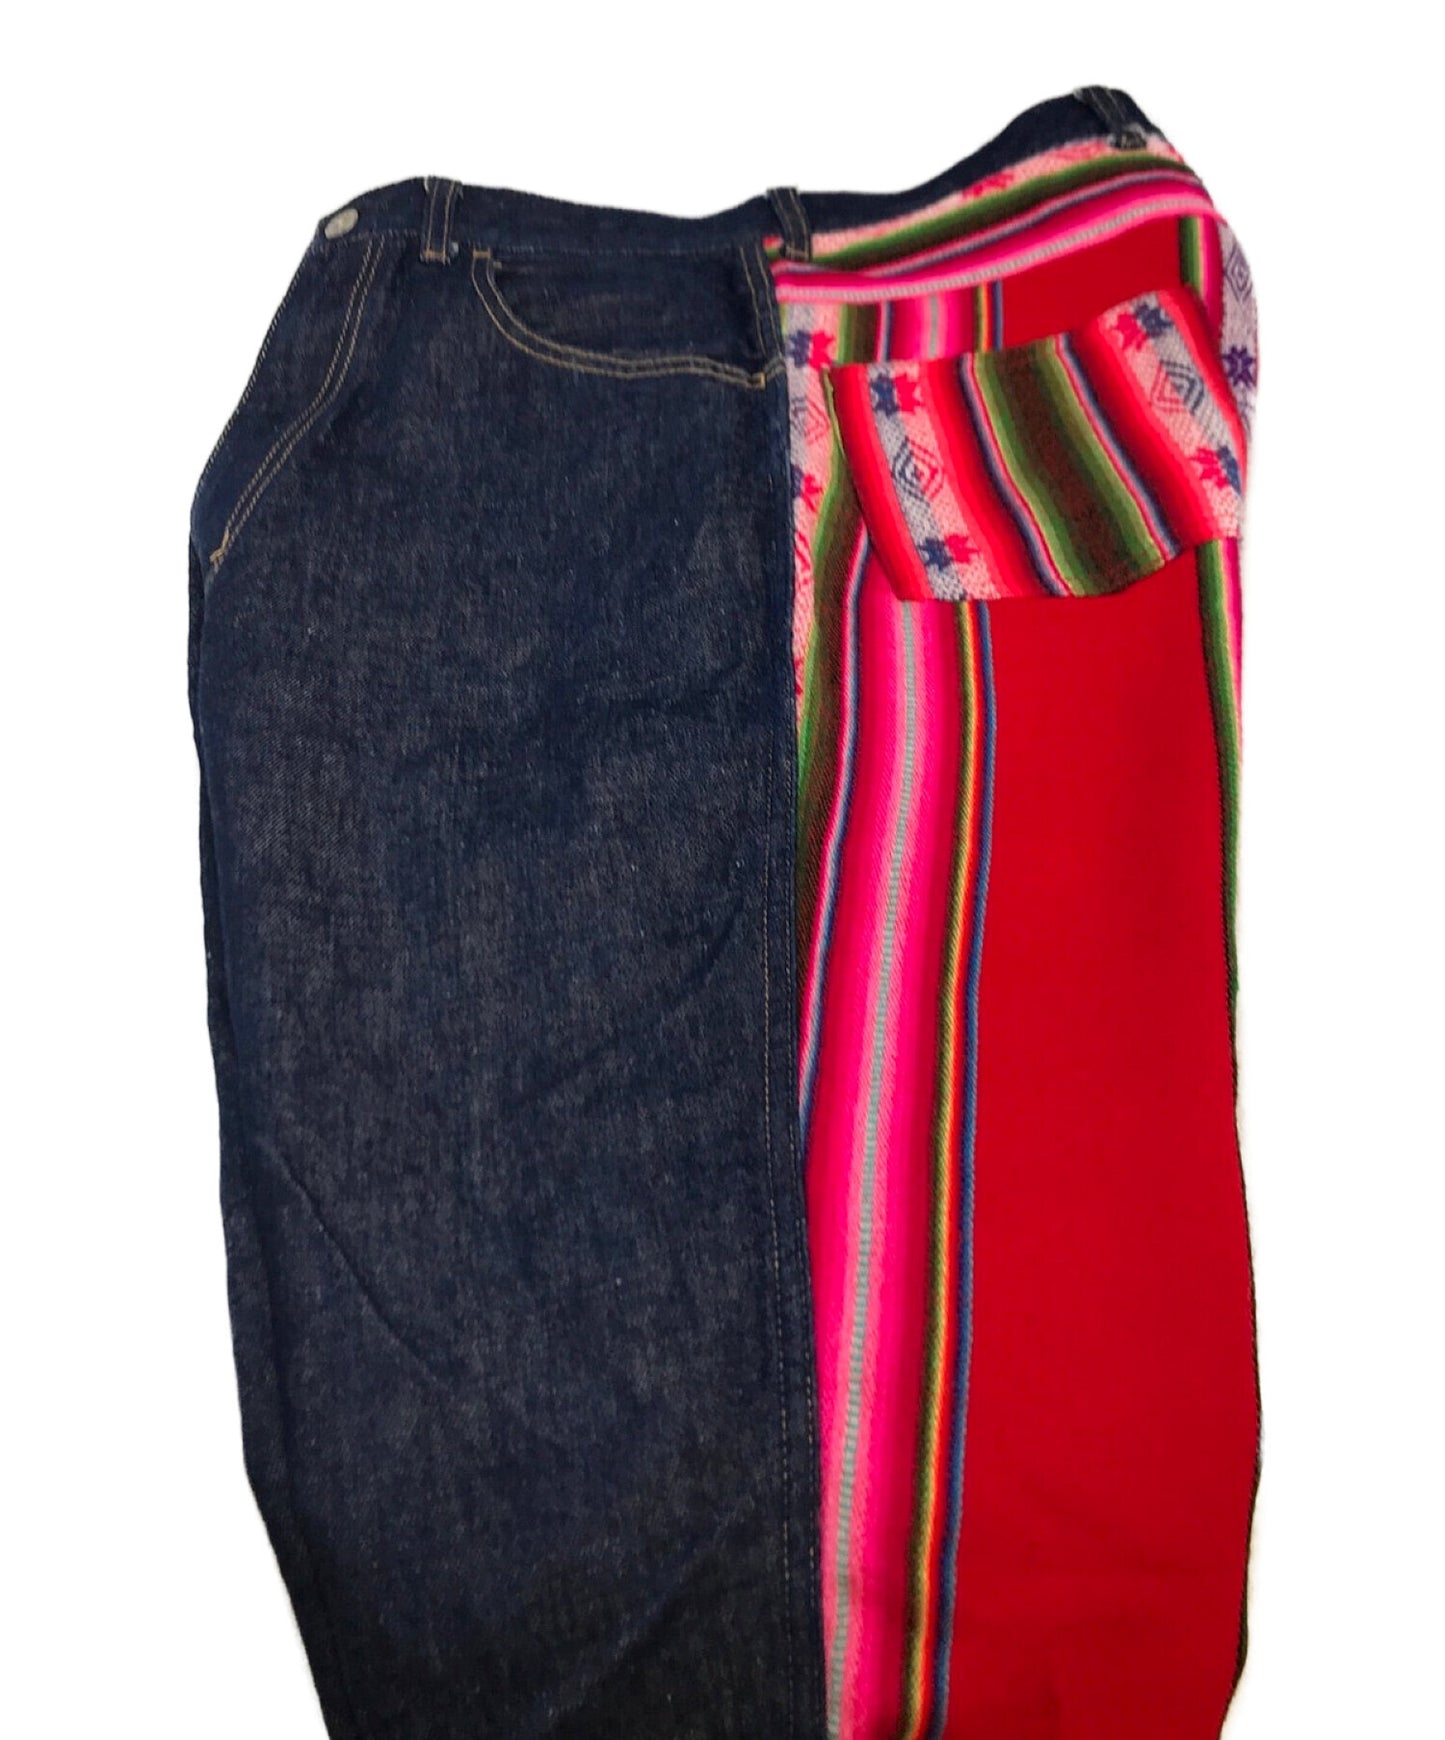 Junya Watanabe Comme des Garcons Ad2013 กางเกงที่มีสีต่างกันในแต่ละด้าน